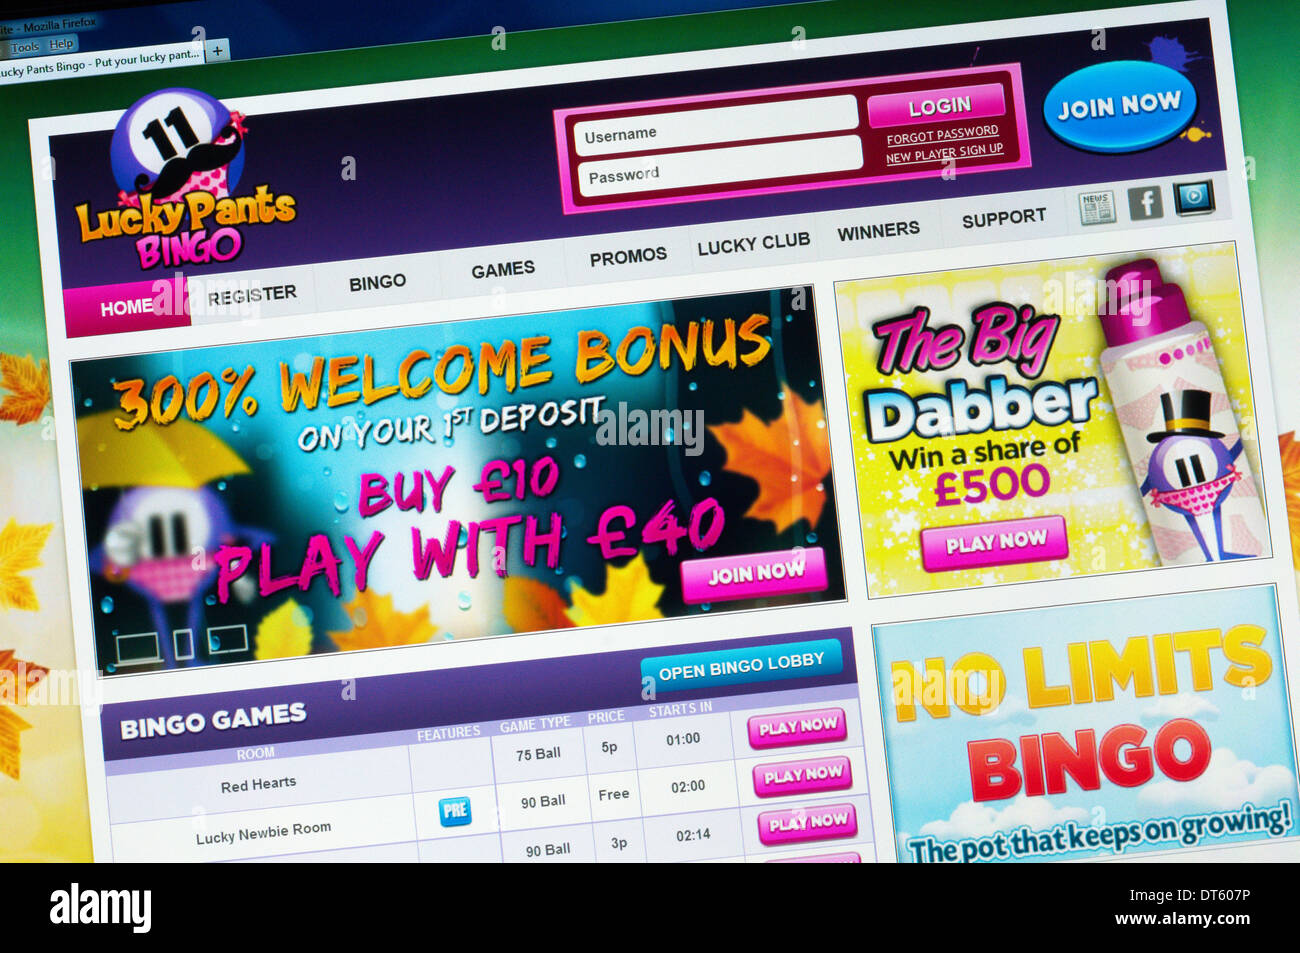 La página de inicio del sitio de bingo pantalones suerte. Foto de stock